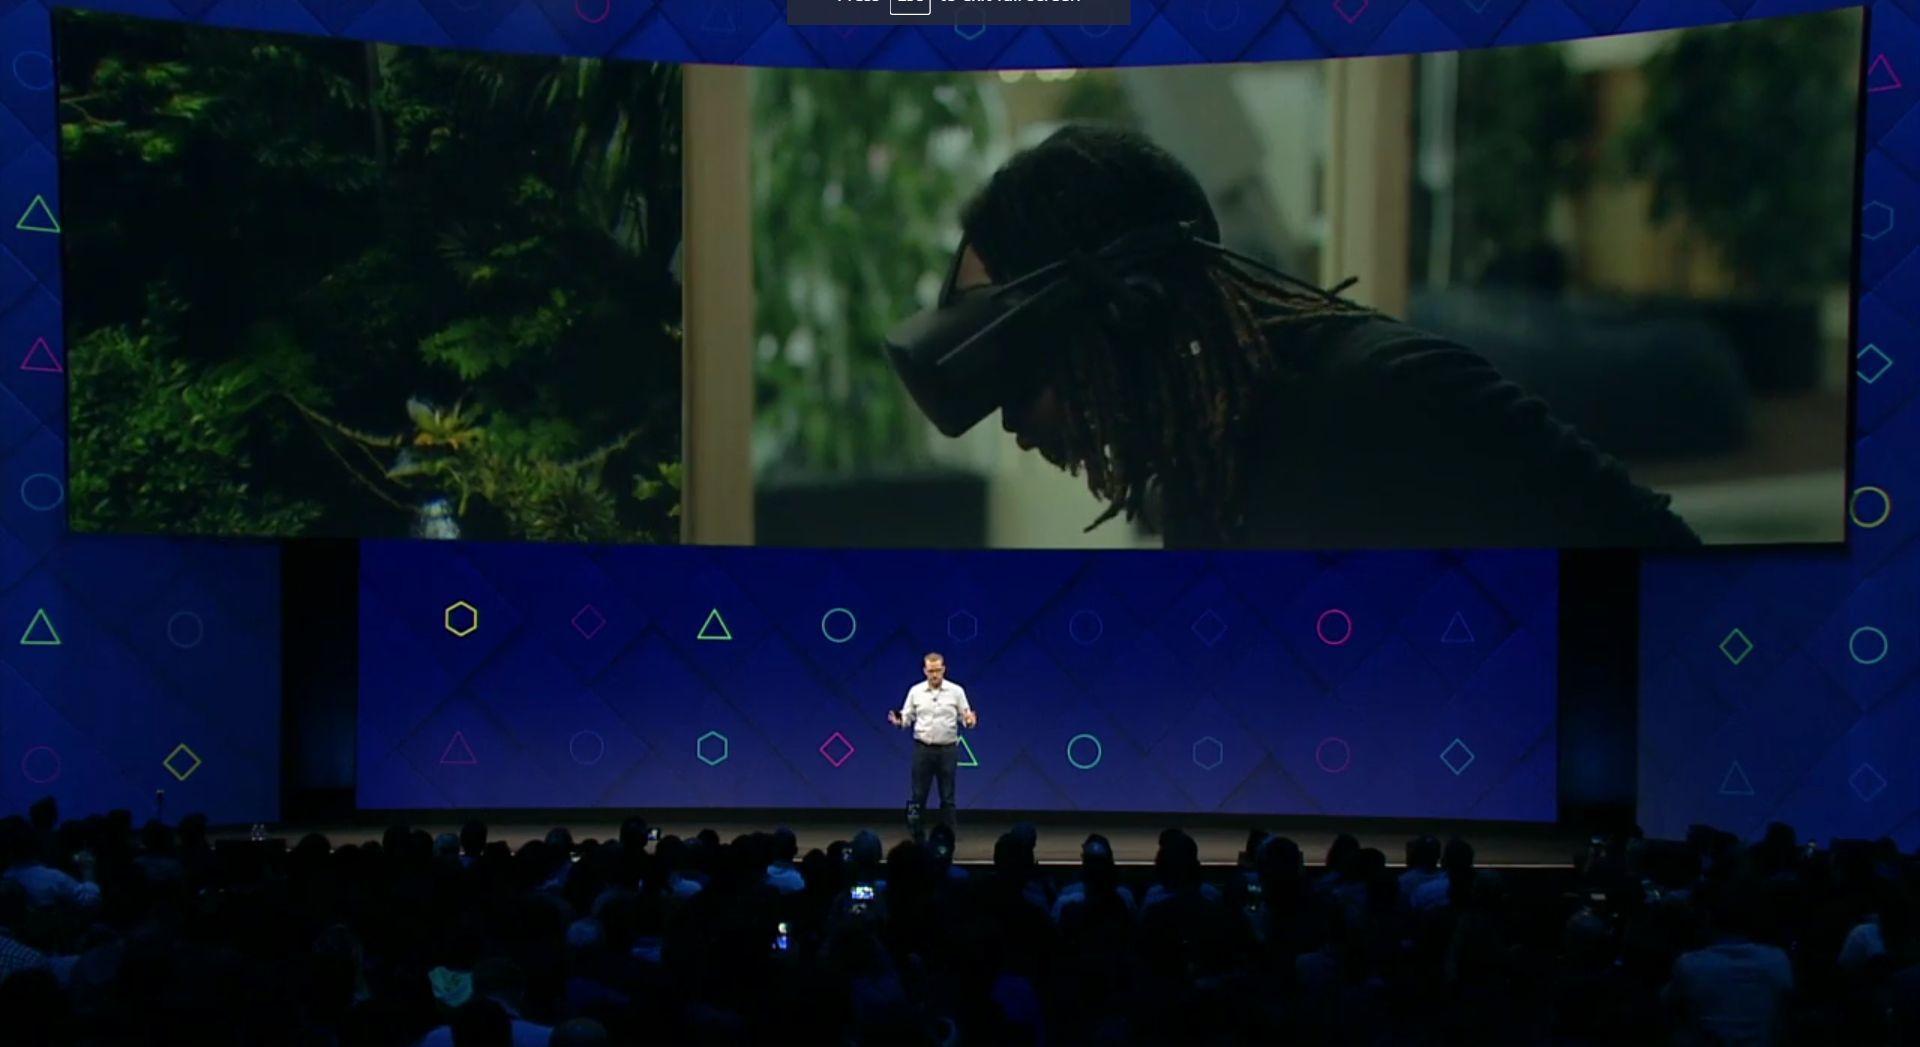 Med Facebooks nye VR-kamera kan du bevege deg rundt inni videoen